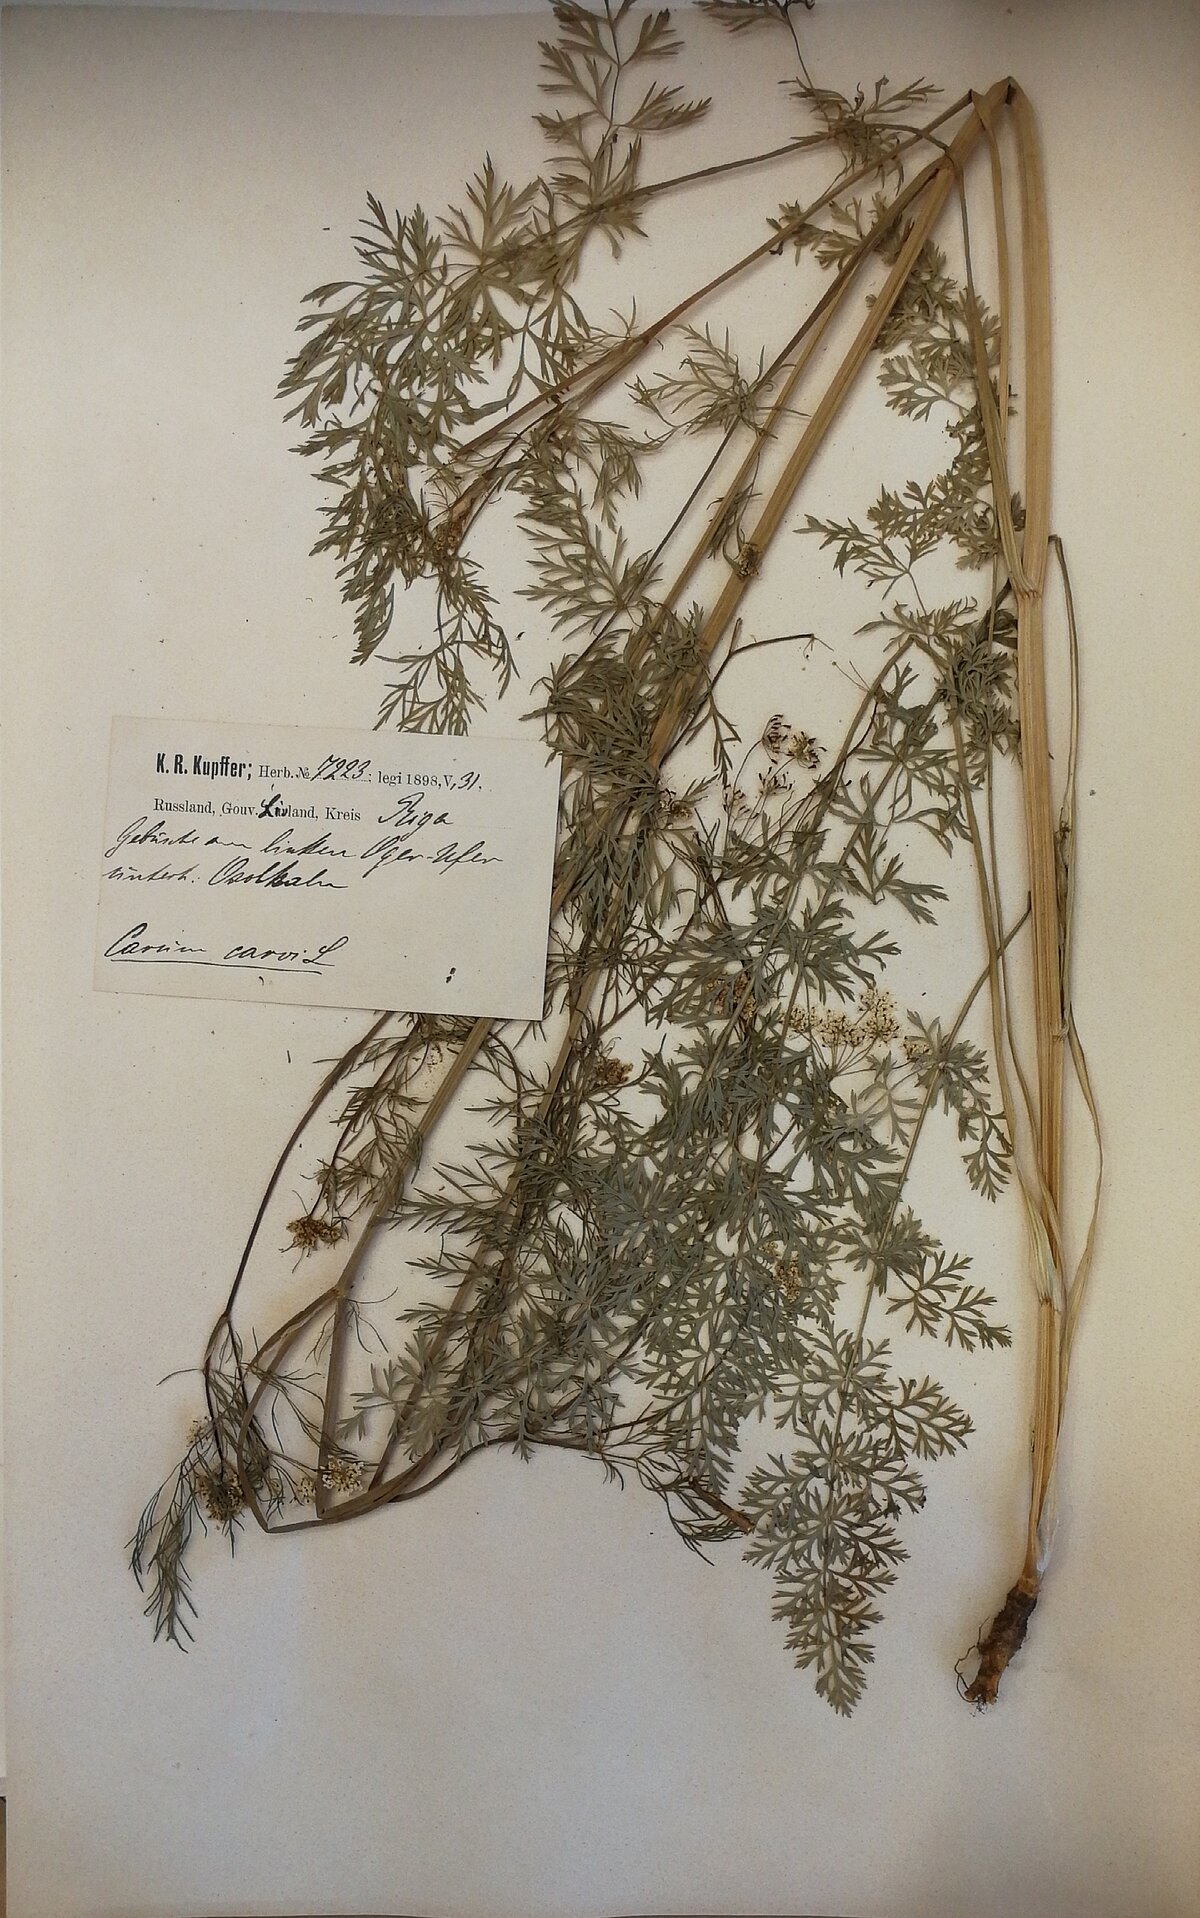 Pļavas ķimenes herbārijs no Herbarium Balticum ievākts Ogres upes kreisajā krastā Ozolkalnos 1898. gada 31. maijā, kolektors K. R. Kupfers. LU Muzeja krājums